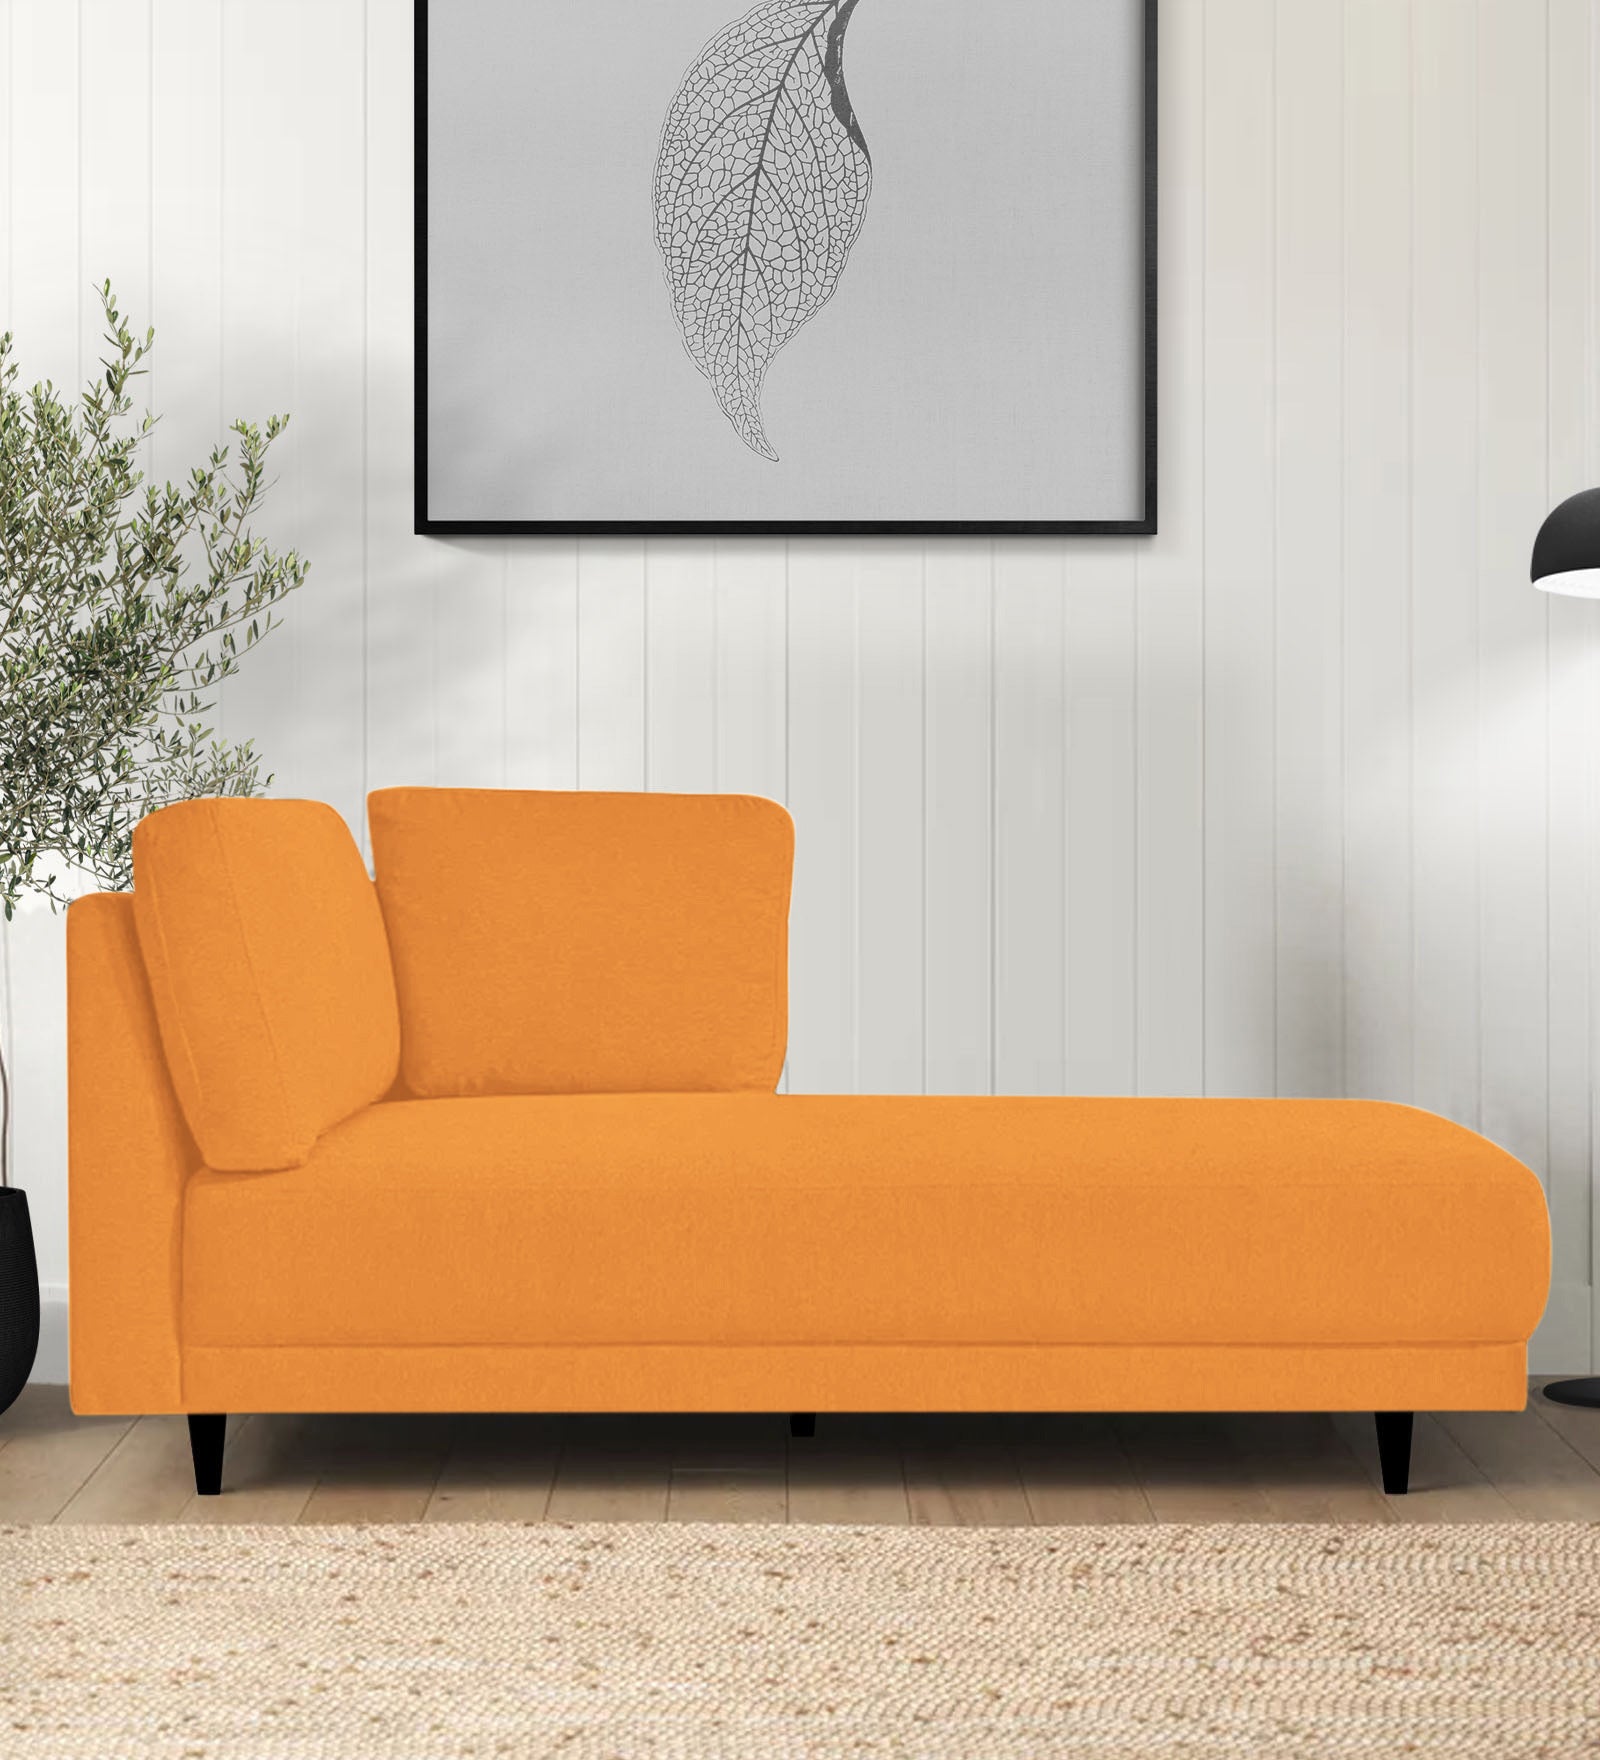 Jonze Velvet RHS Chaise Lounger in Tangerine Orange Colour